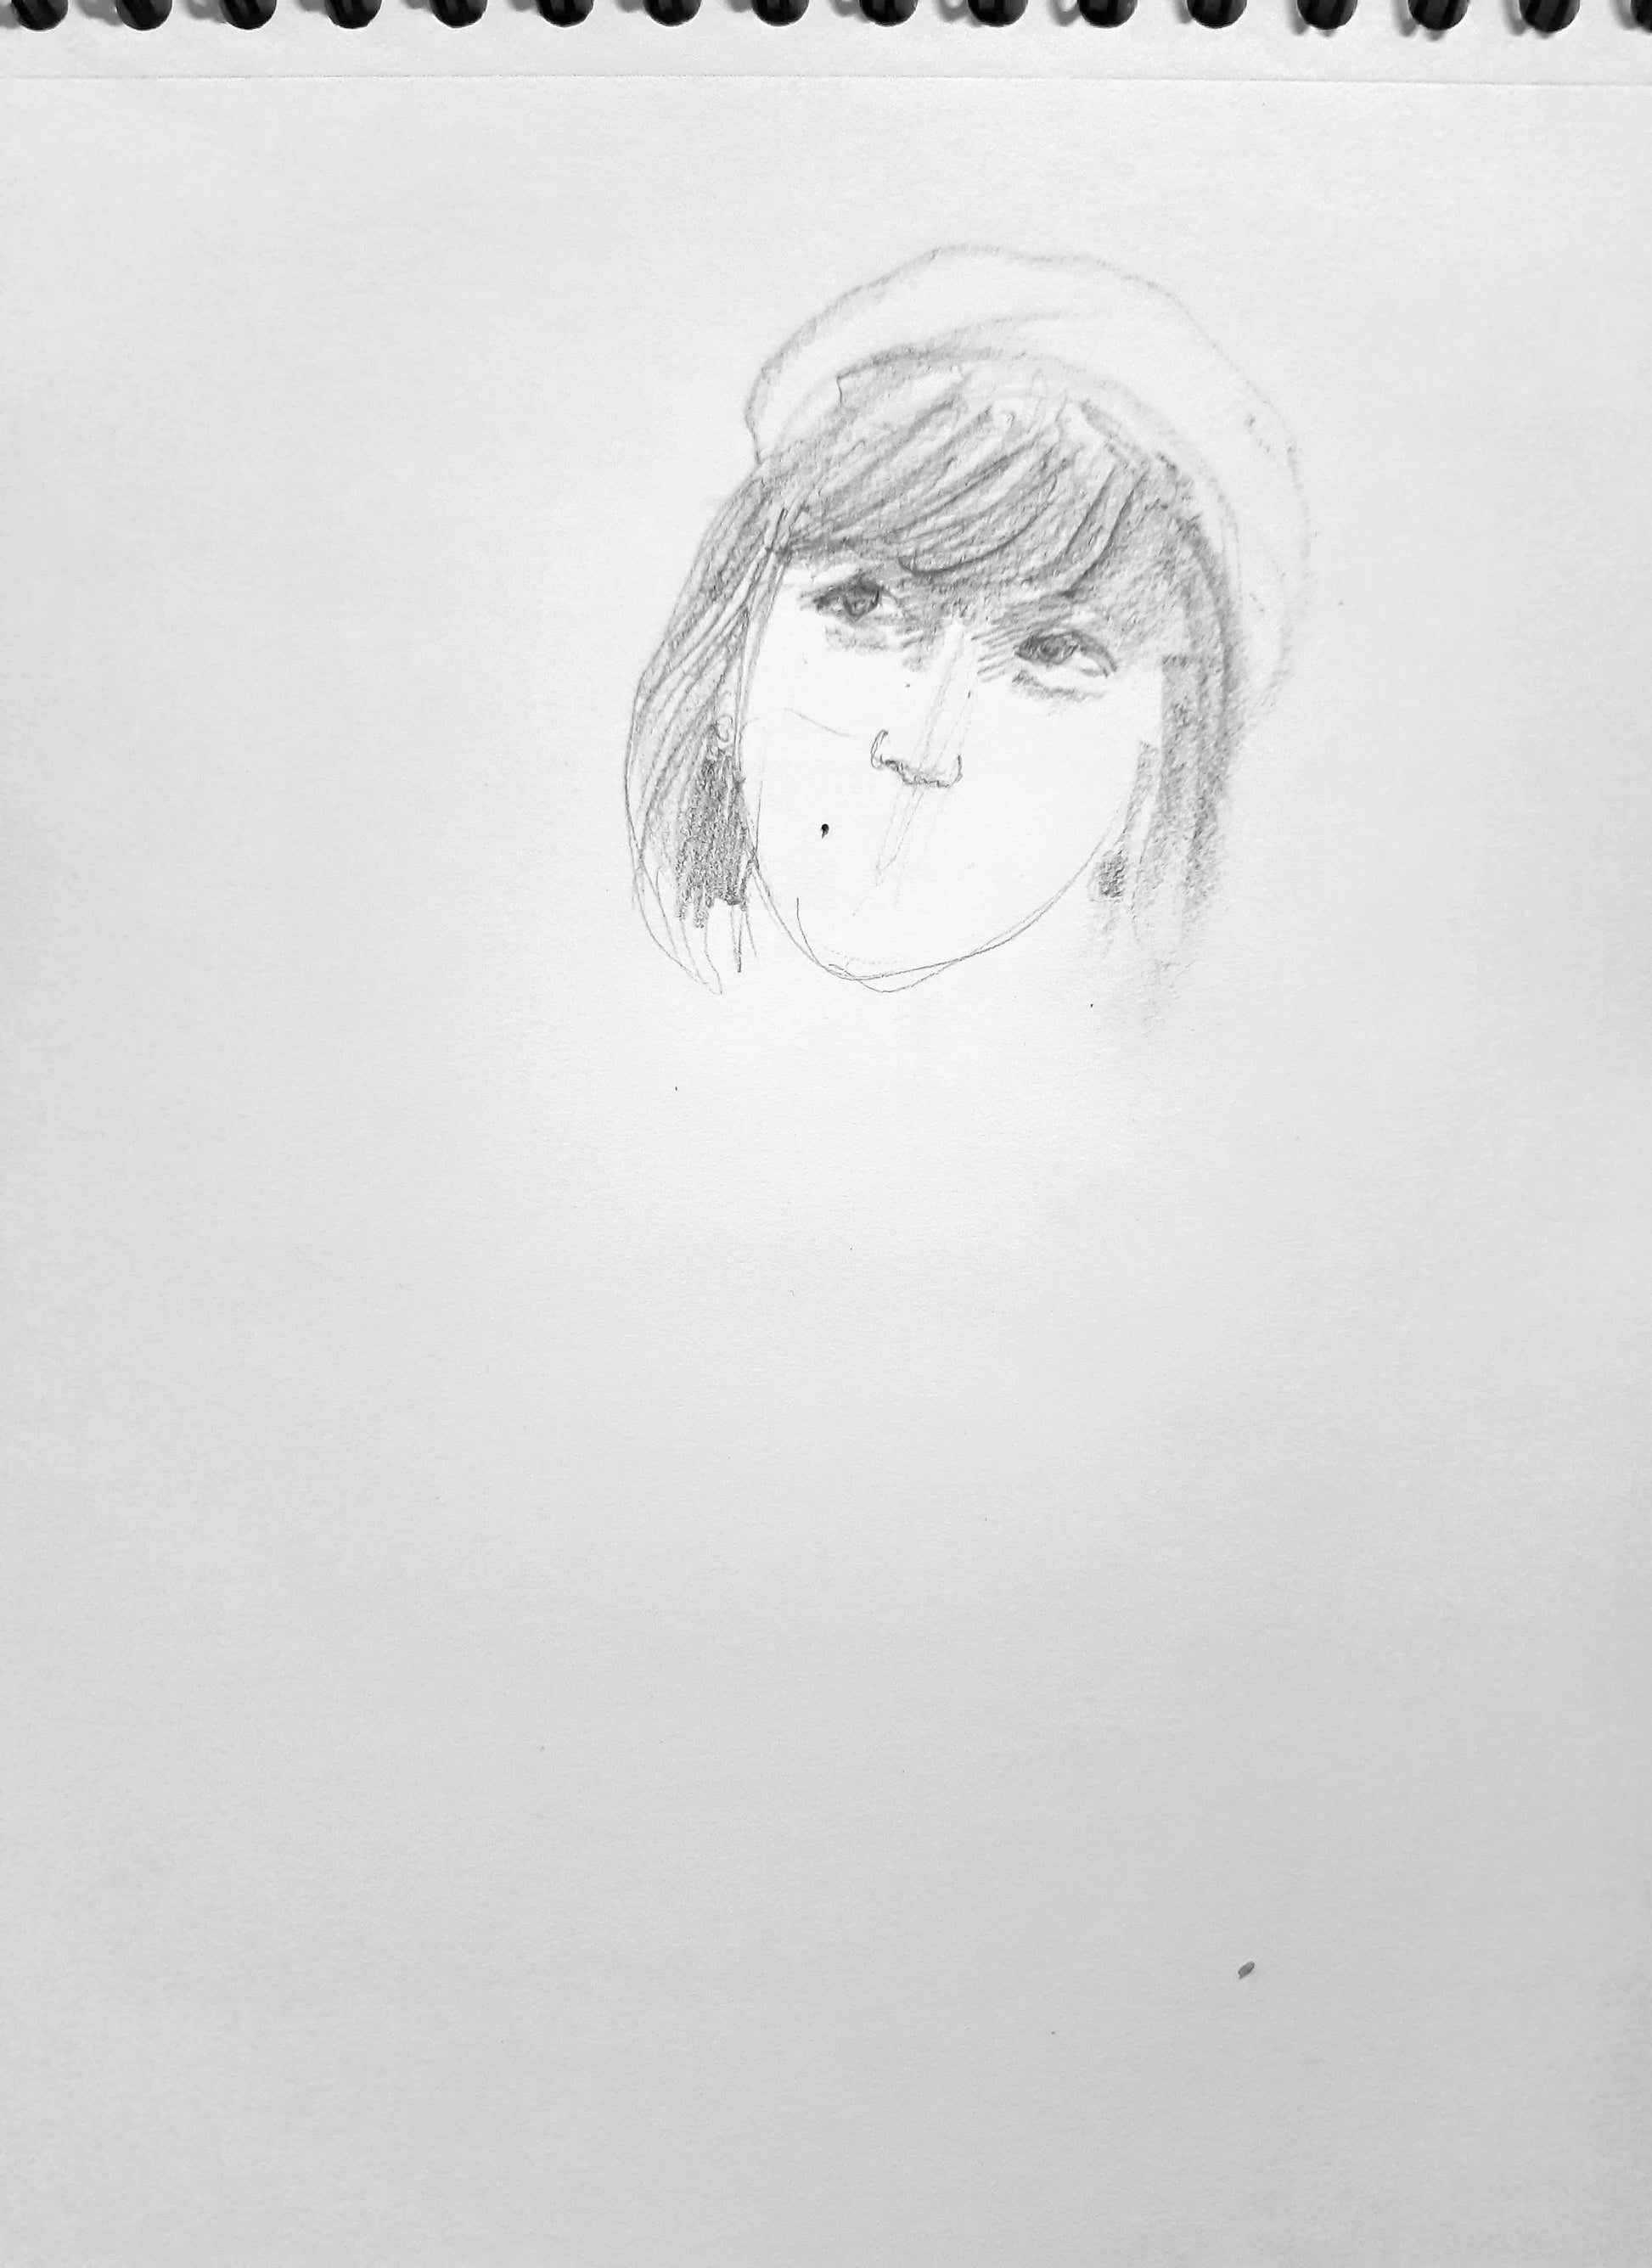 Work in progress, Happy bride, pencil sketch on paper